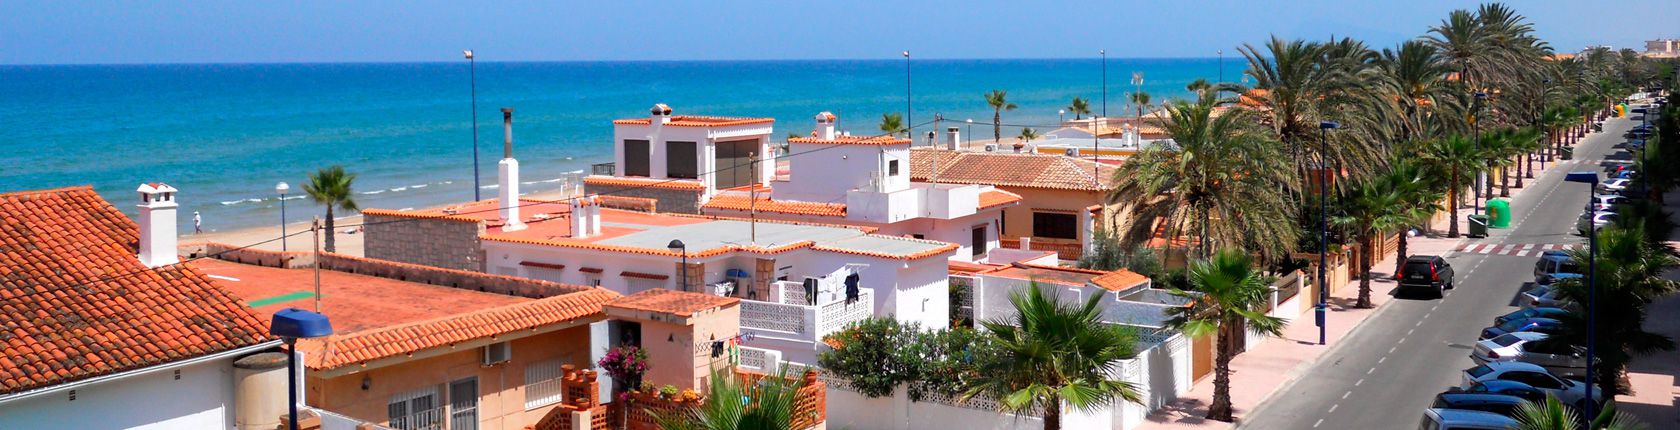 Tenemos la casa de sus sueños en Playa de Miramar, Guardamar, Daimus. CVK & HOMES en Miramar